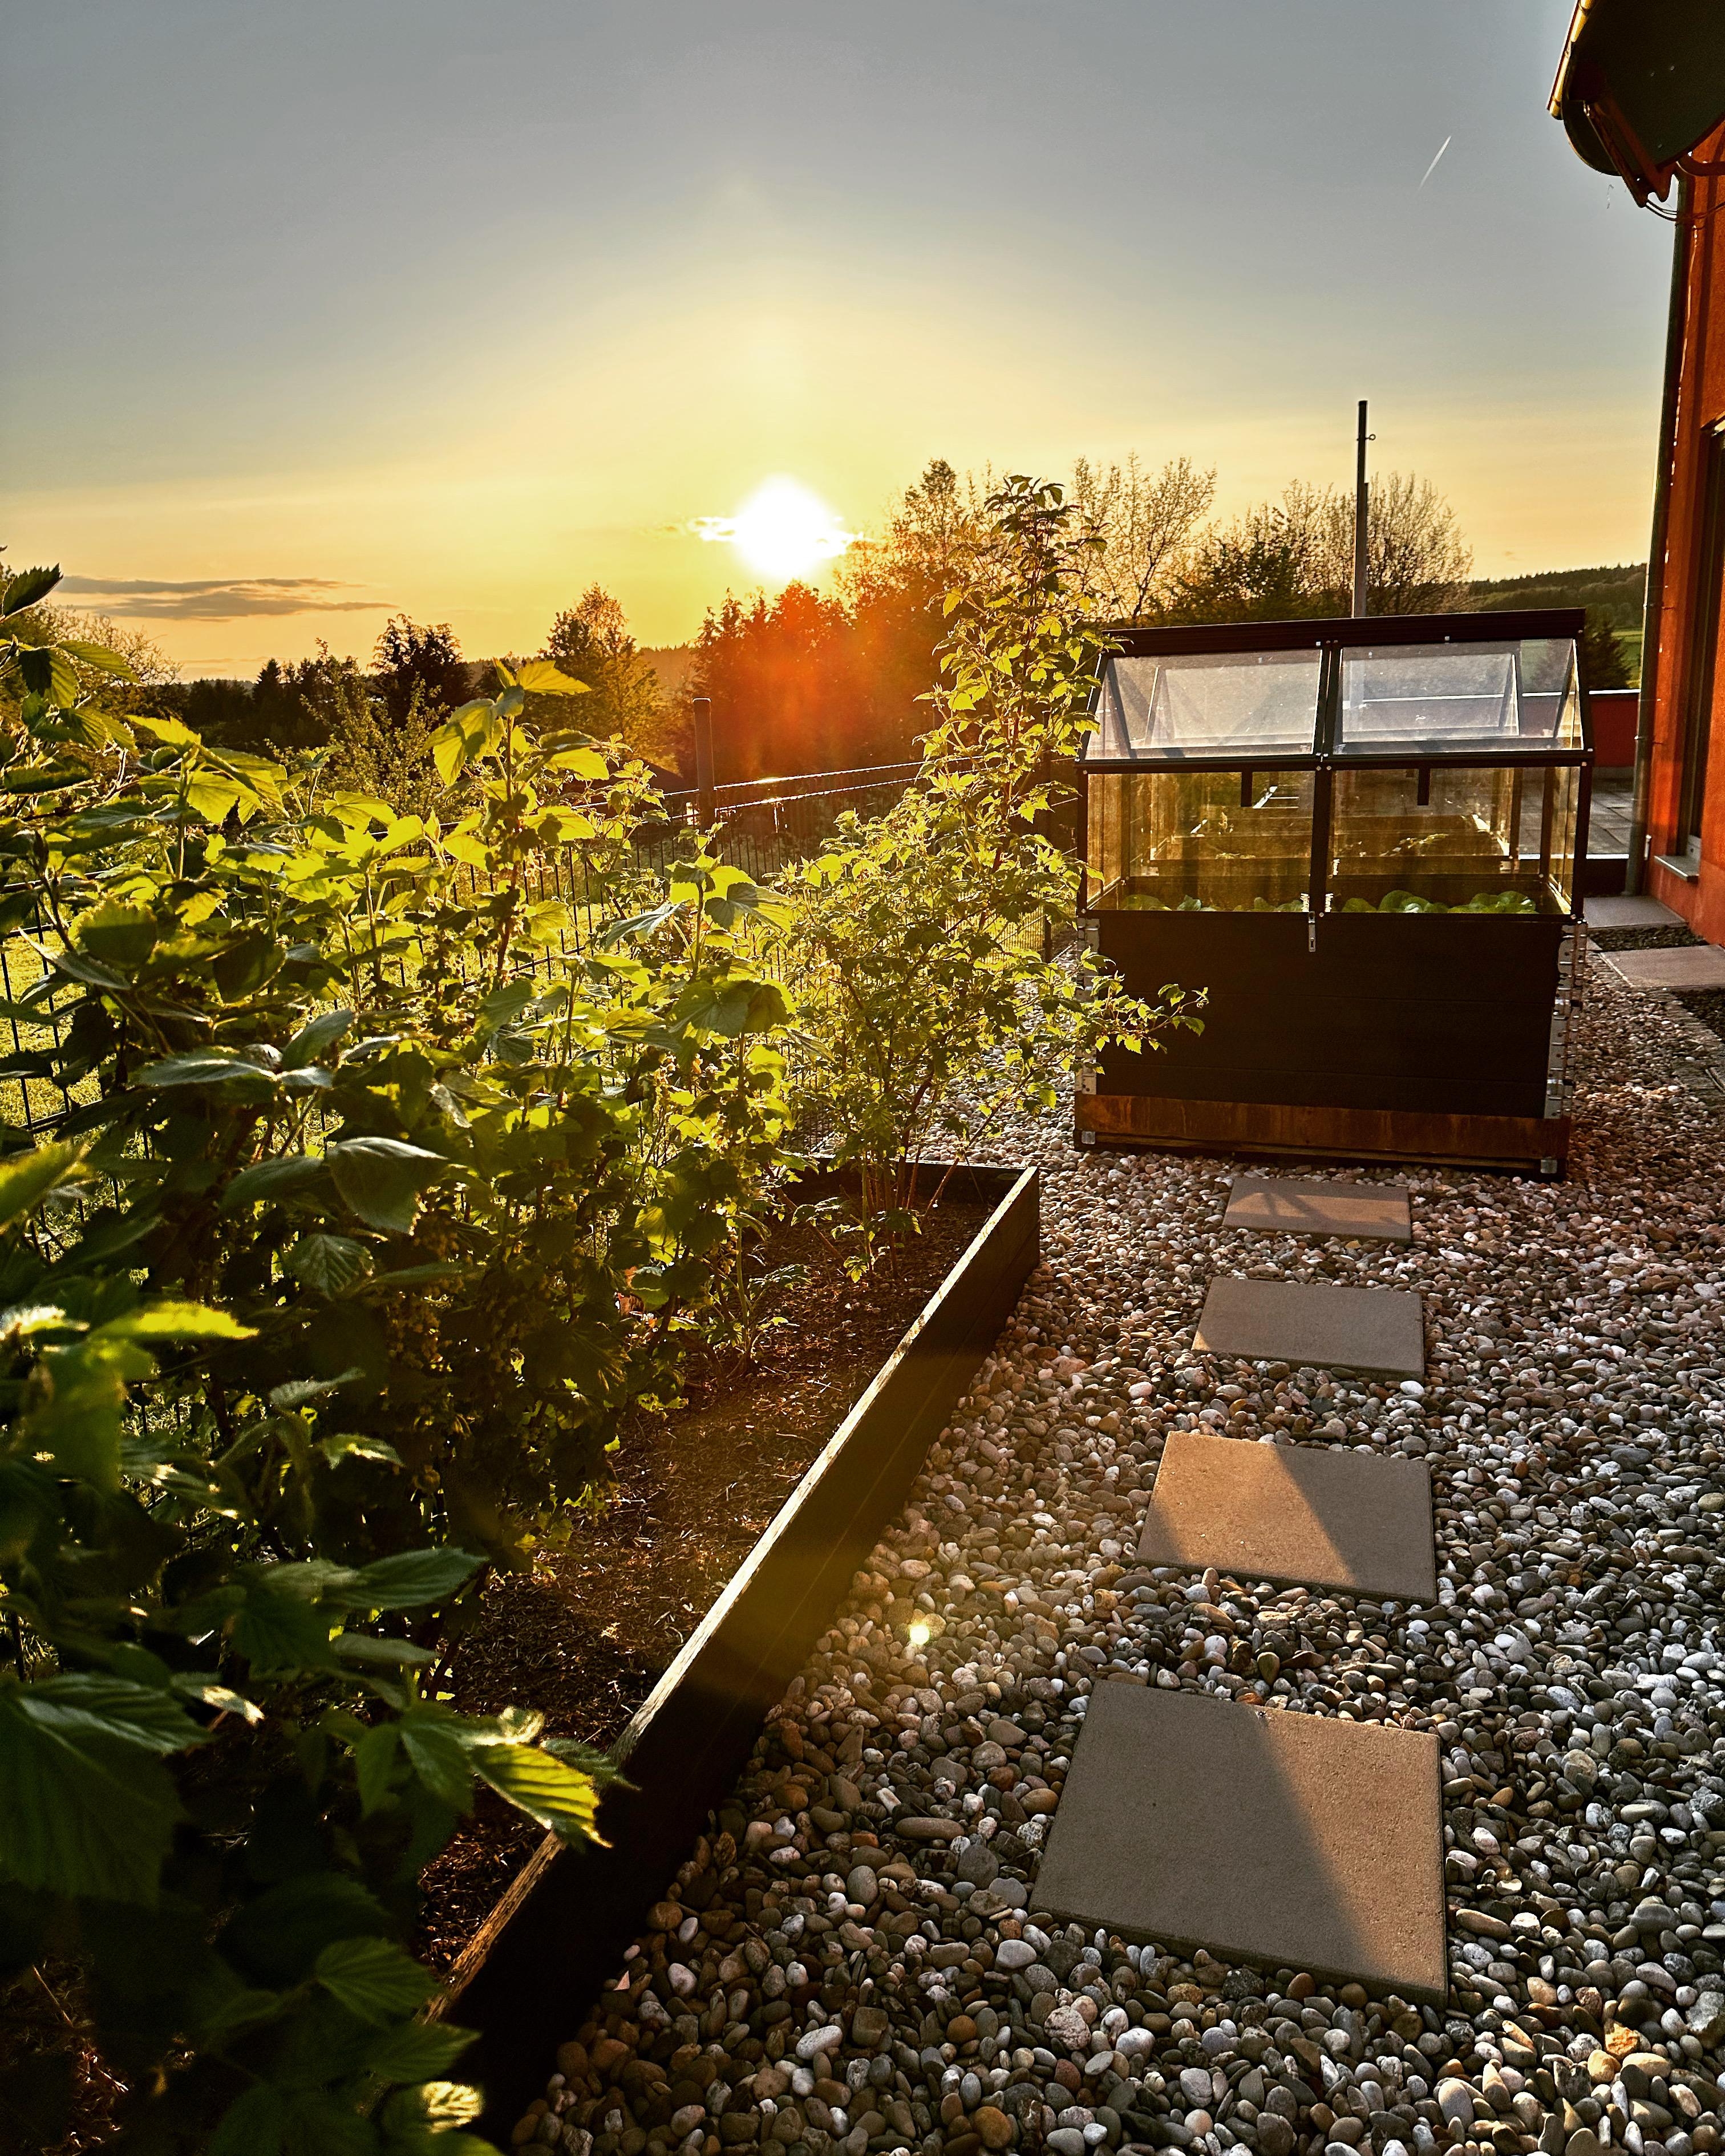 Abends im Garten #Abendstimmung #Garten #Hochbeet #Gewächshaus #DIY #Aussengestaltung 